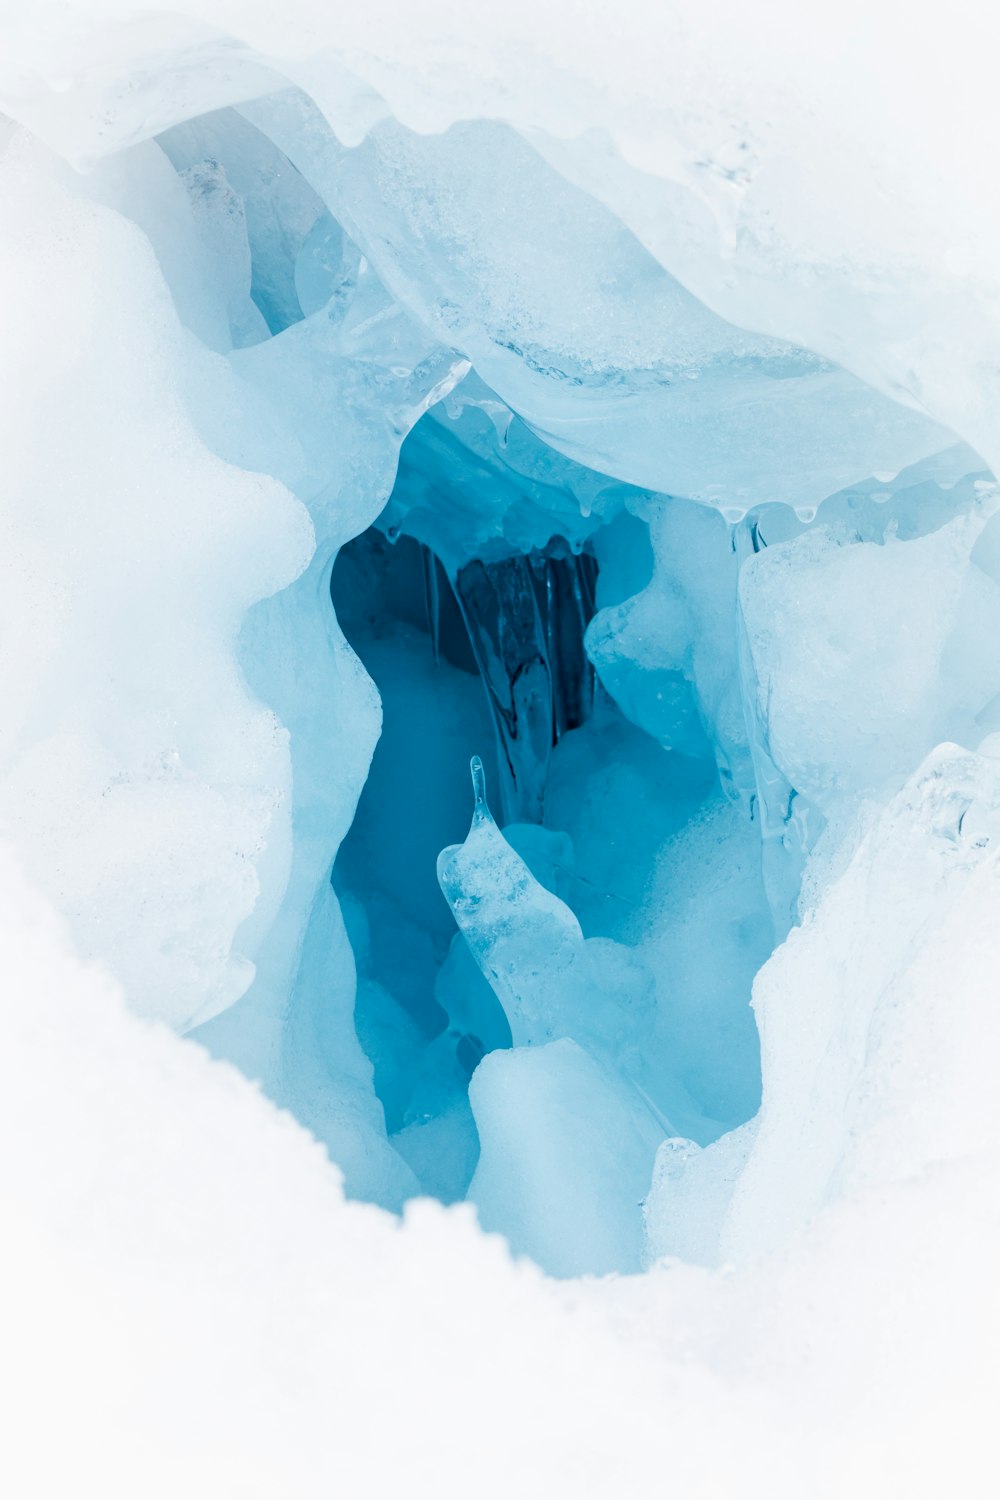 un trou dans la glace qui ressemble à une grotte de glace